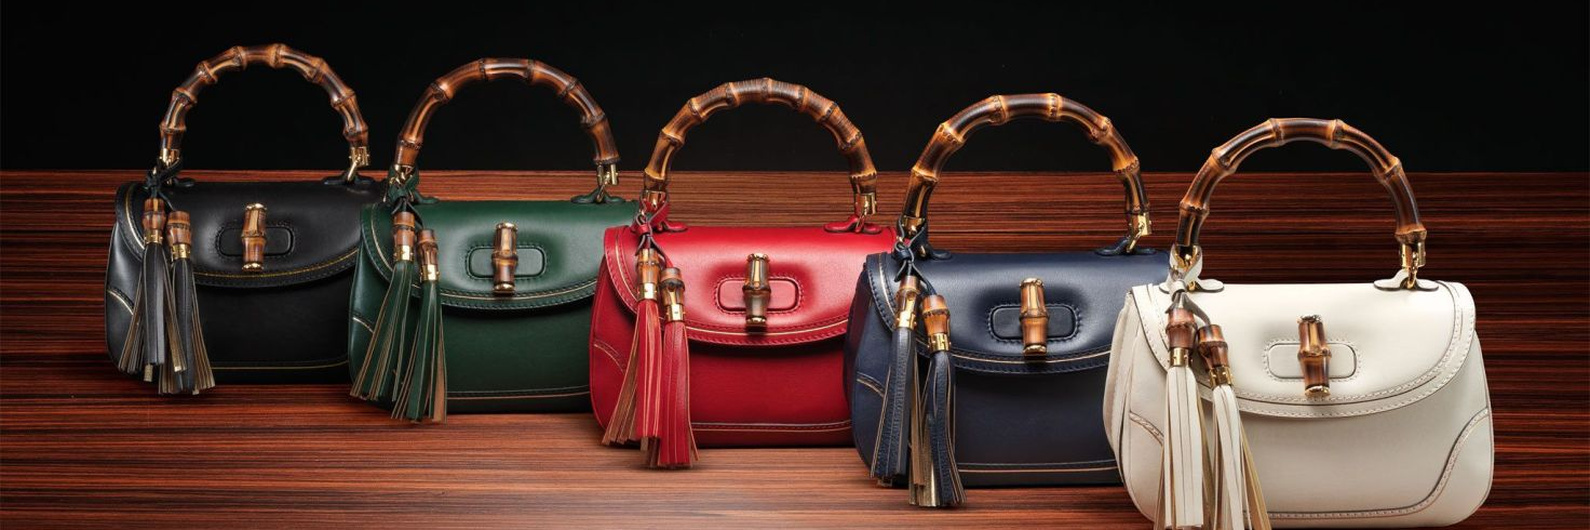 Как работает ломбард по выкупу брендовых сумок Luxury сегмента?